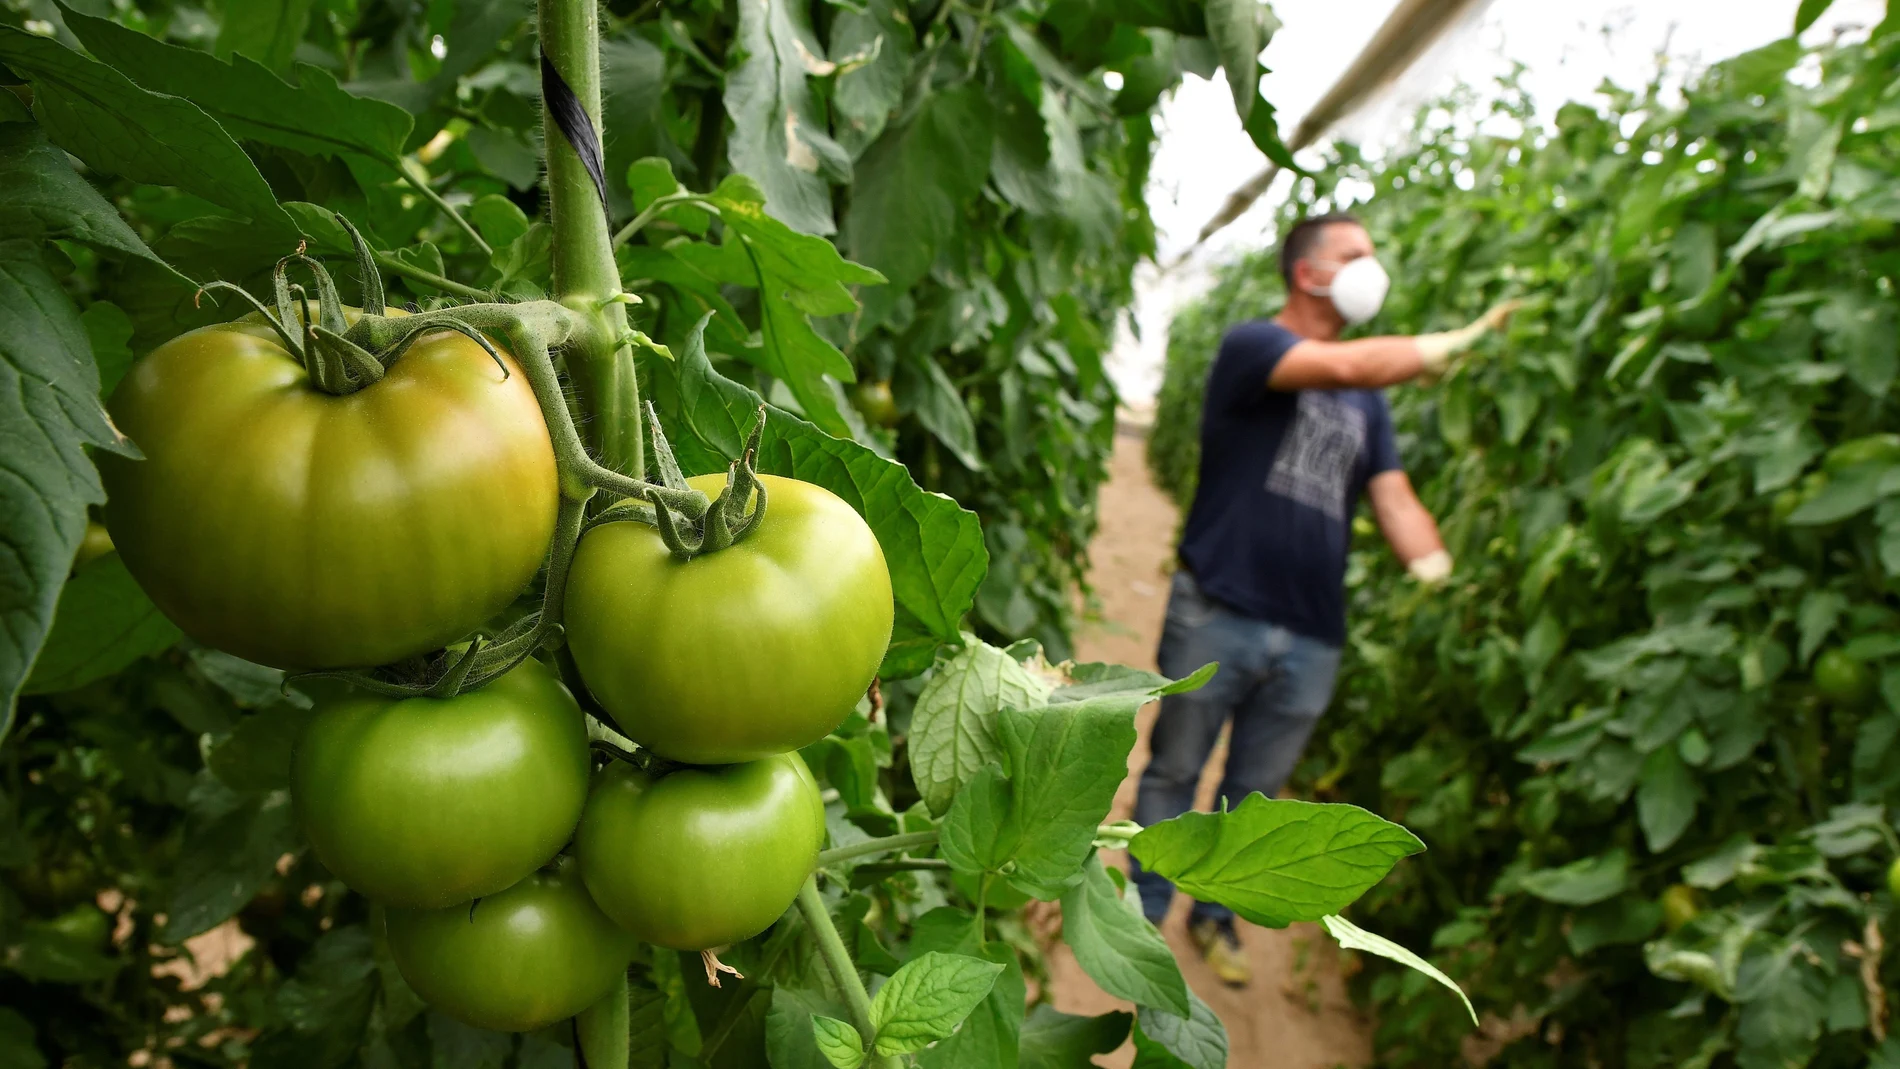 Plantación de tomate en Almería. EFE / Carlos Barba